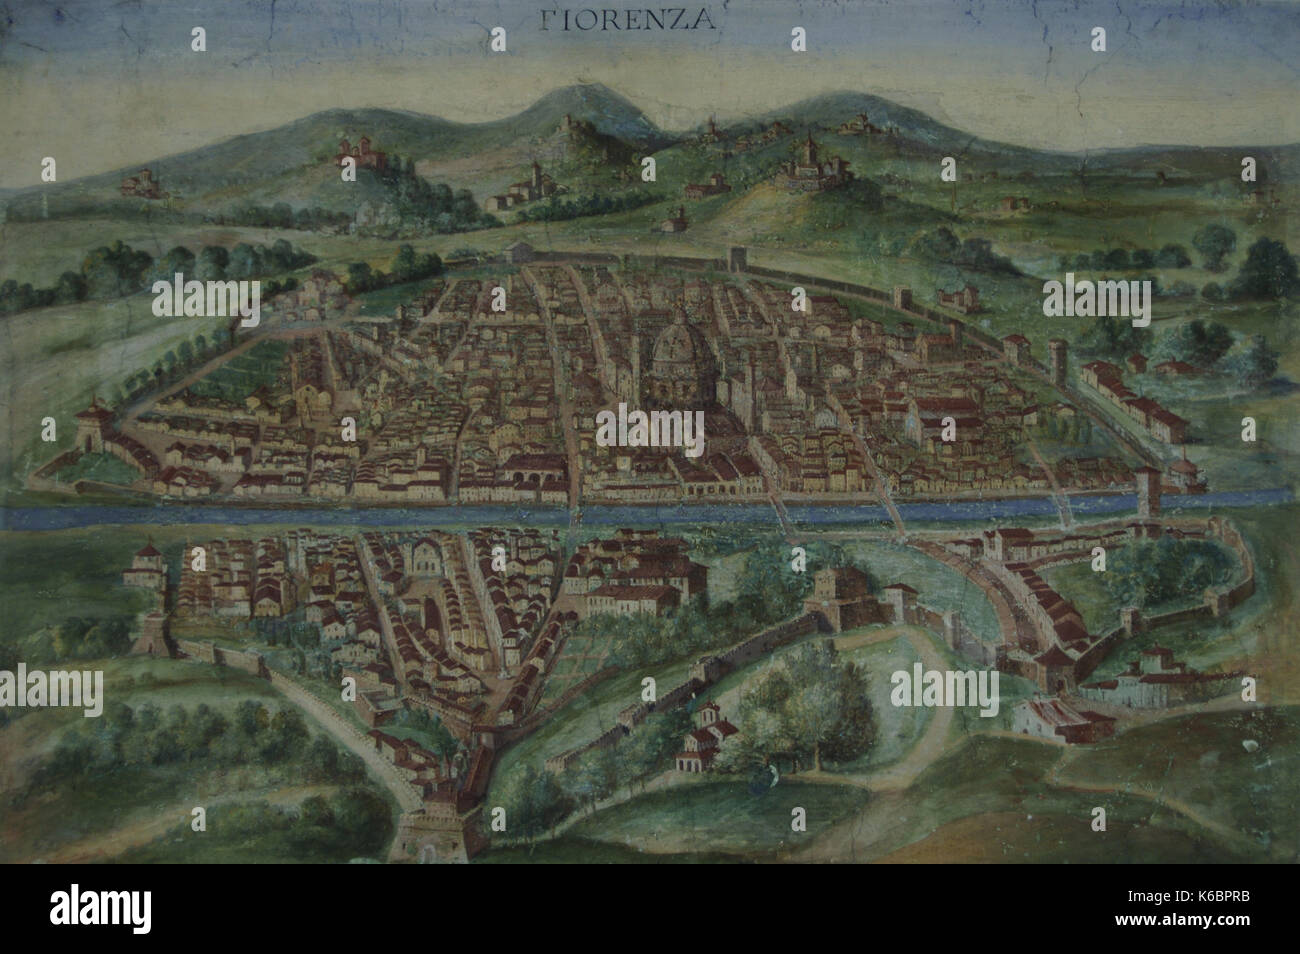 Italien. Florenz. Karte der Stadt im 16. Jahrhundert. Karten Galerie. Vatikanischen Museen. Vatikan Staat. Stockfoto